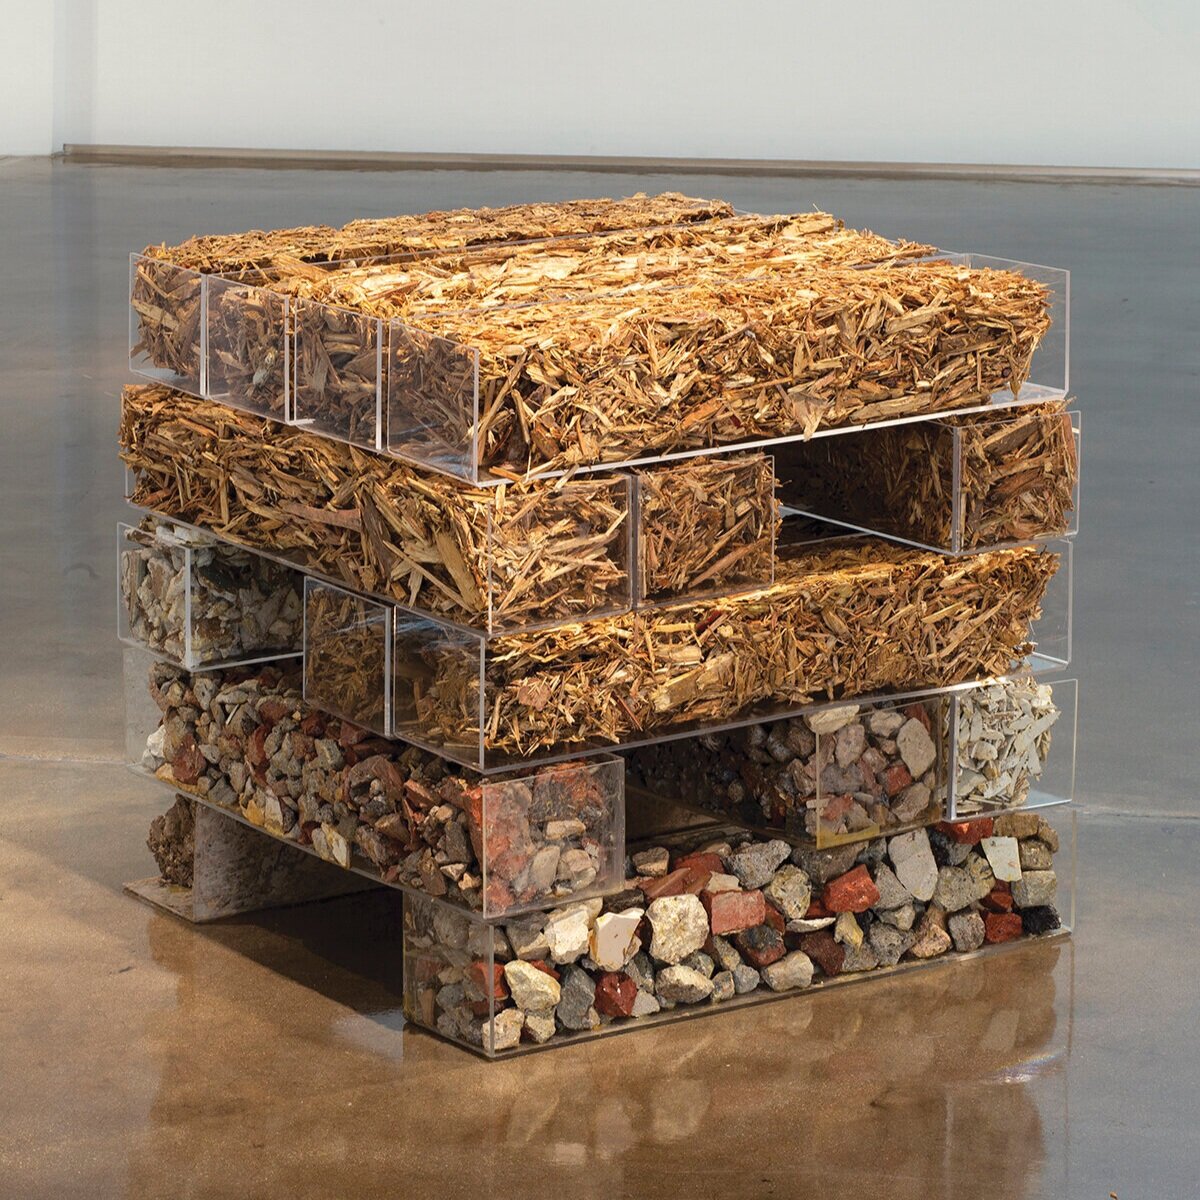   Pablo Rasgado  Casa Mínima  , 2019  Acrylic, stones, wood  32,7 × 32,7 × 33,9 in  Piero Atchugarry Gallery 